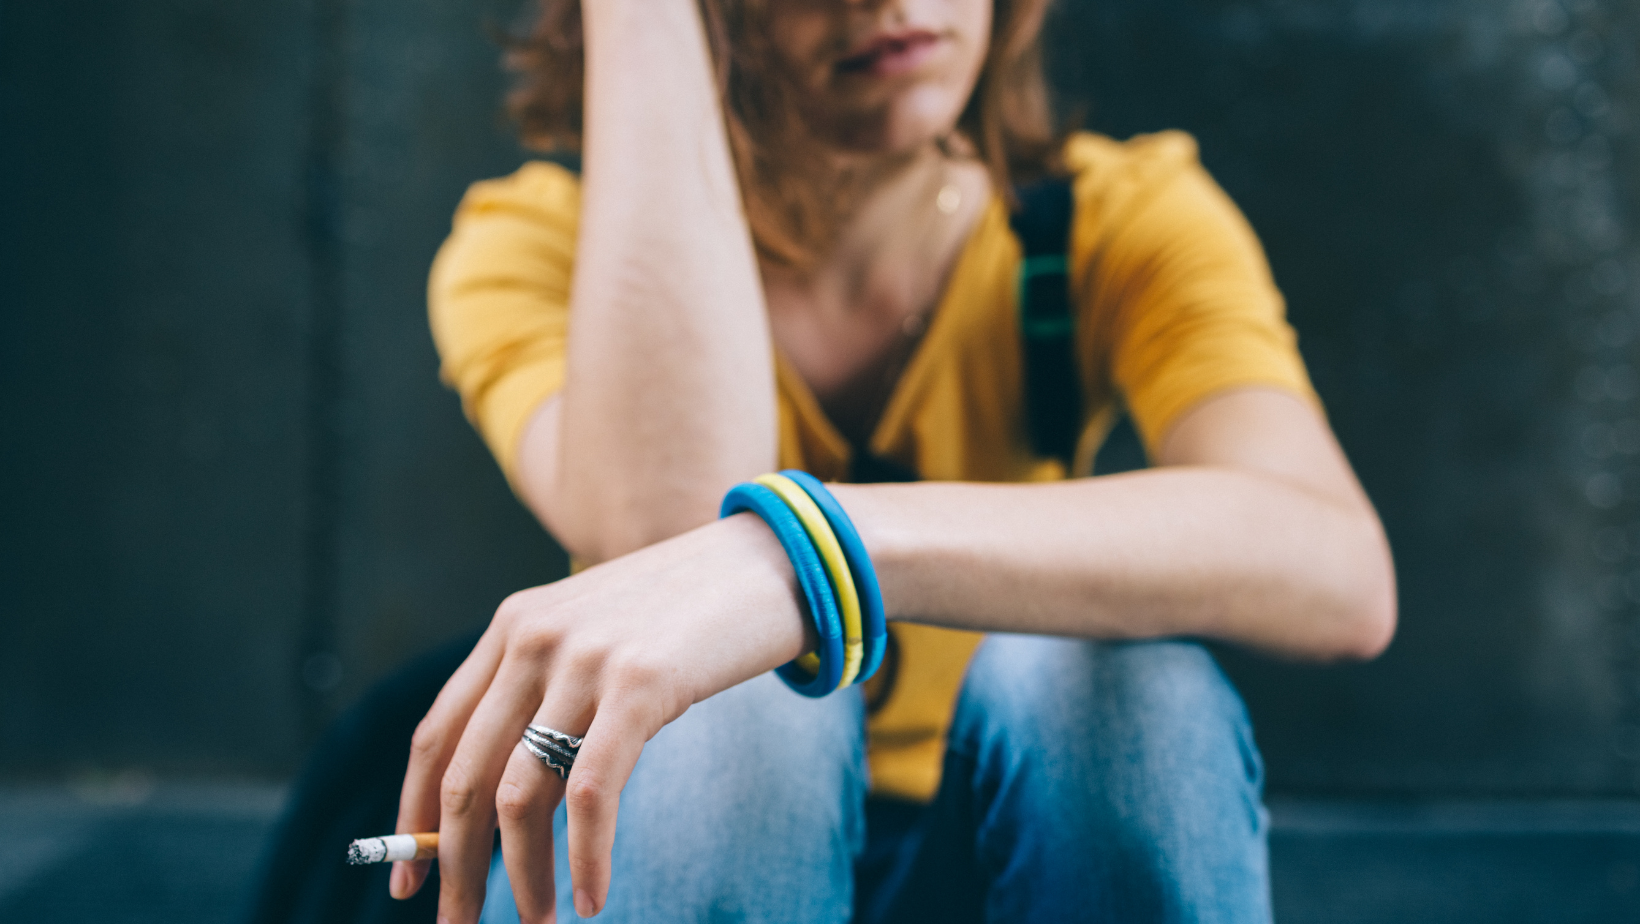 Nikotin hotar ungas psykiska hälsa